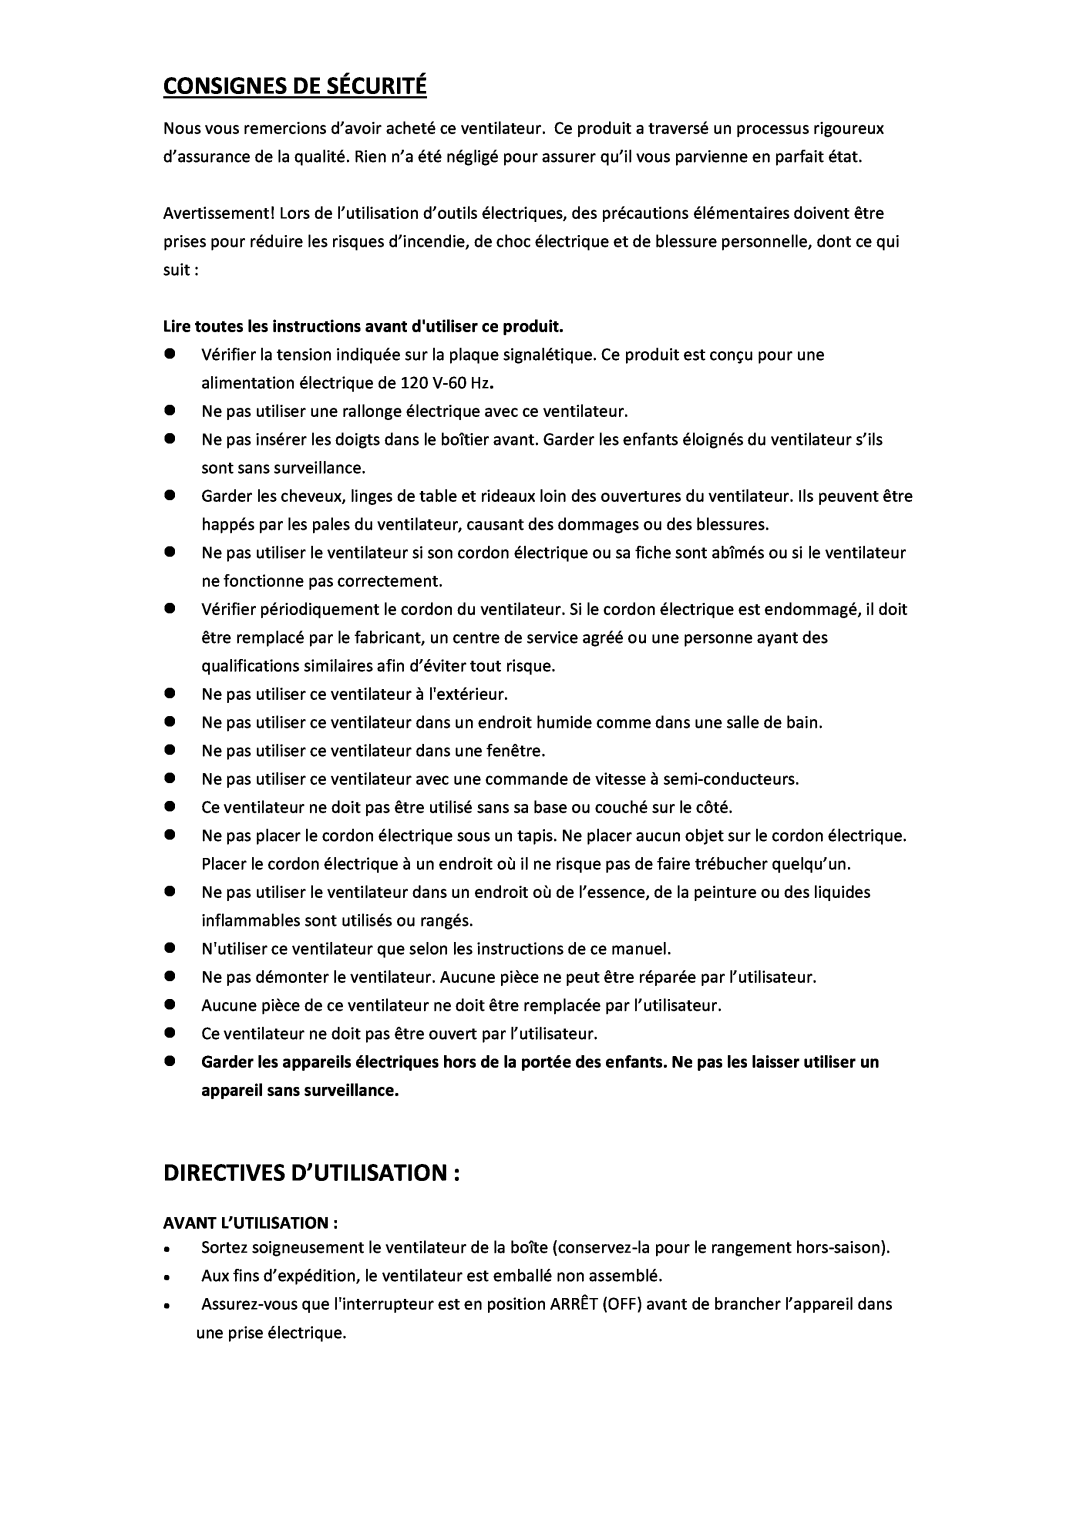 Black & Decker BDTF4200R instruction manual Consignes De Sécurité, Directives D’Utilisation, Avant L’Utilisation 